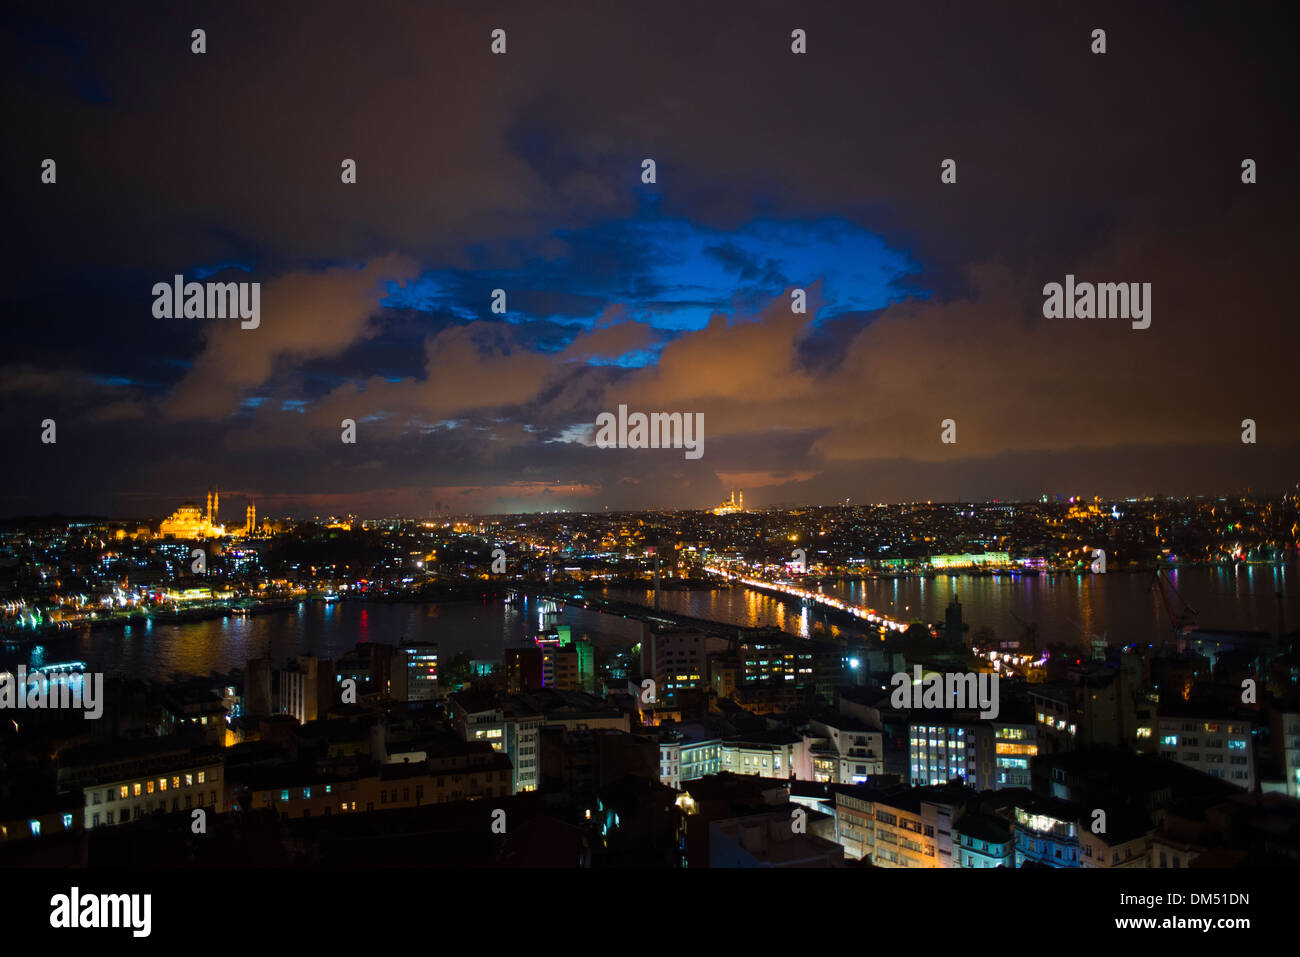 La notte cade su Istanbul, Tsar-City. La vista invernale dalla Torre Galata Foto Stock